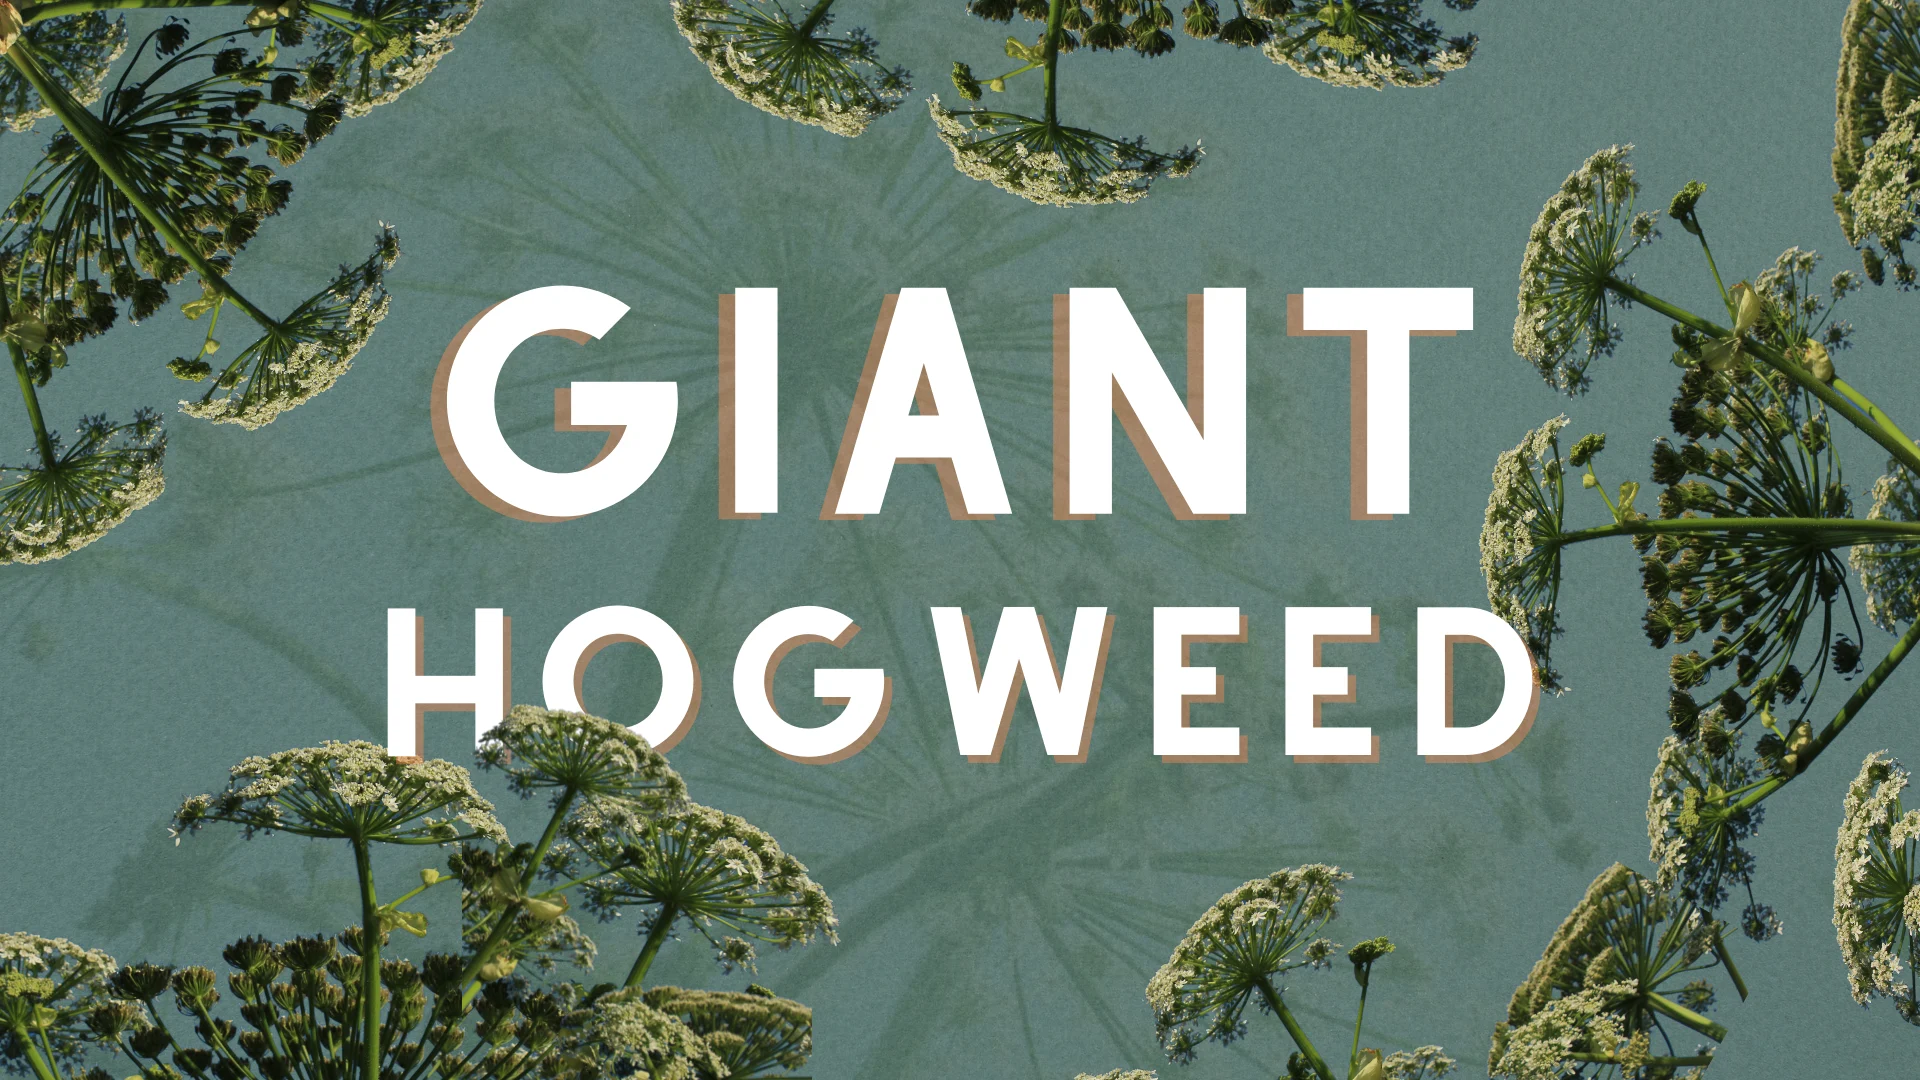 giant hogweed - custom